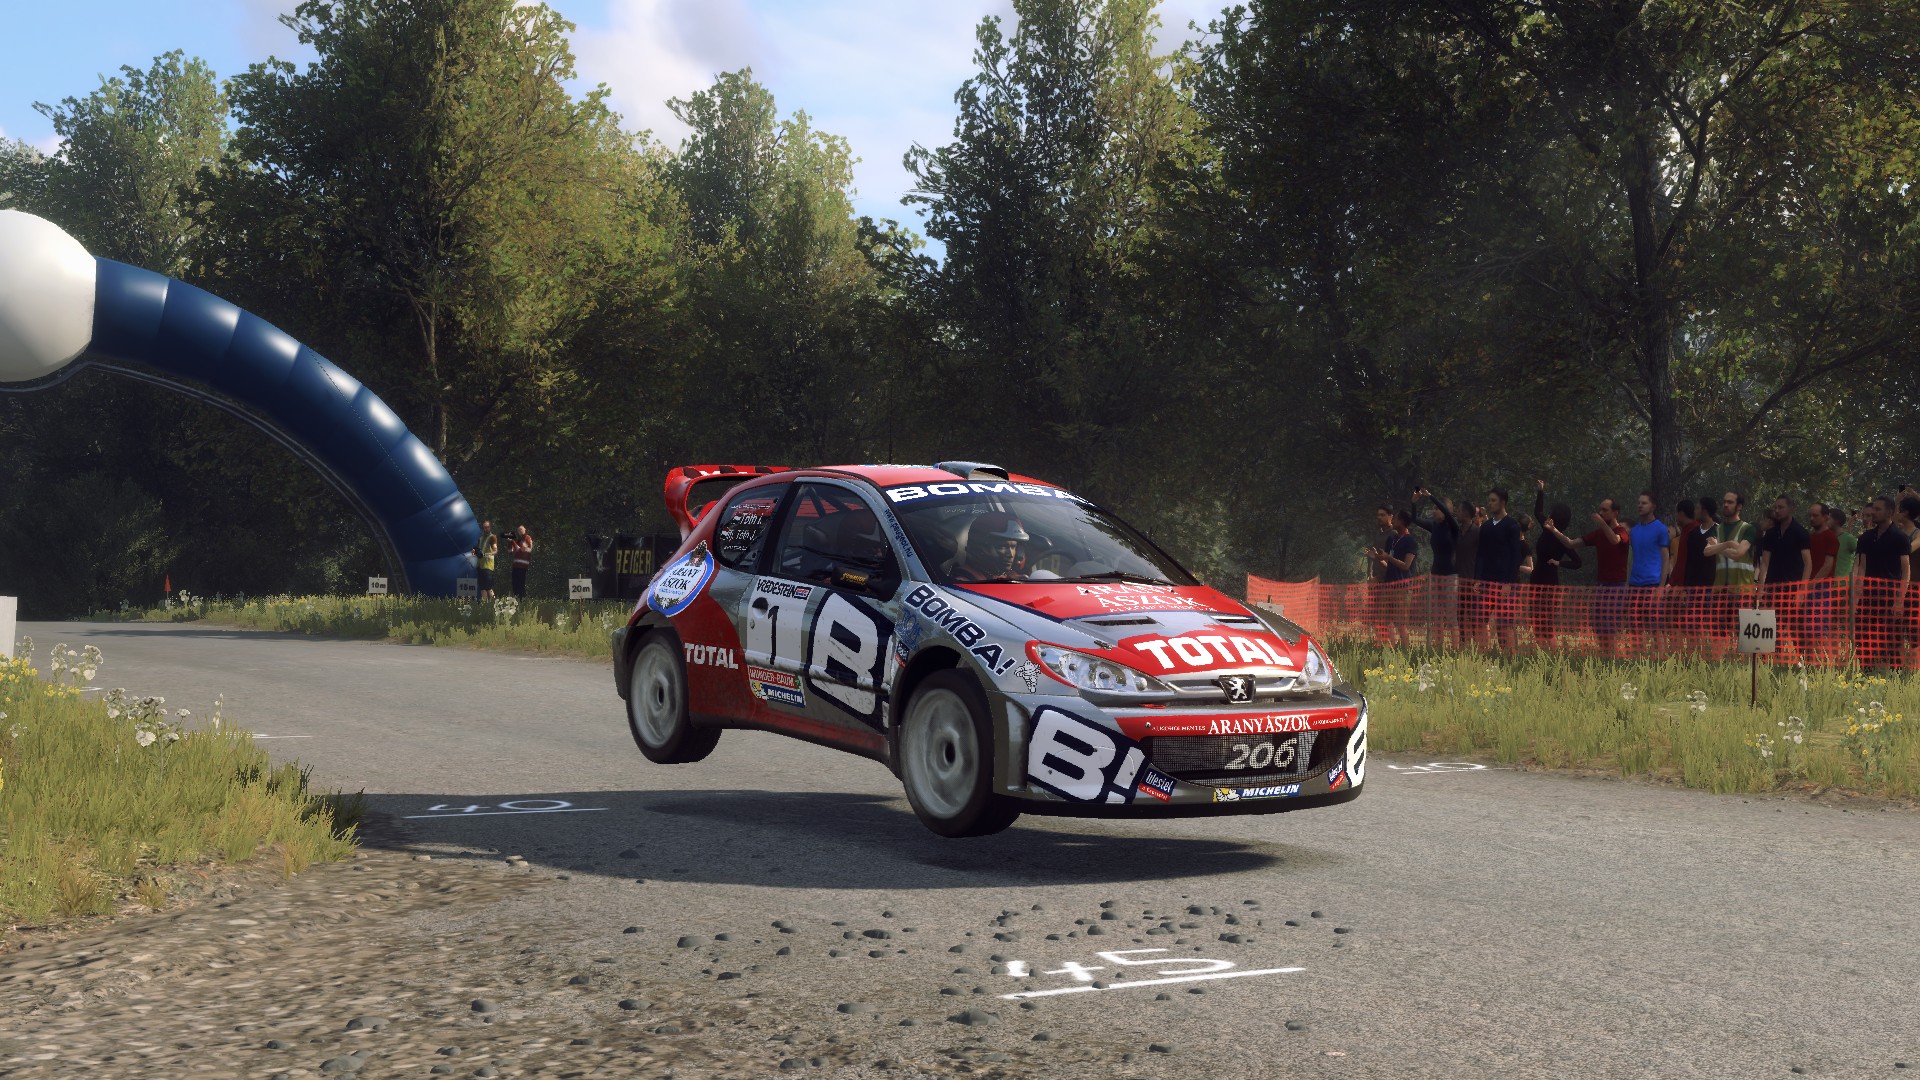 Peugeot 206 WRC Bomba! livery